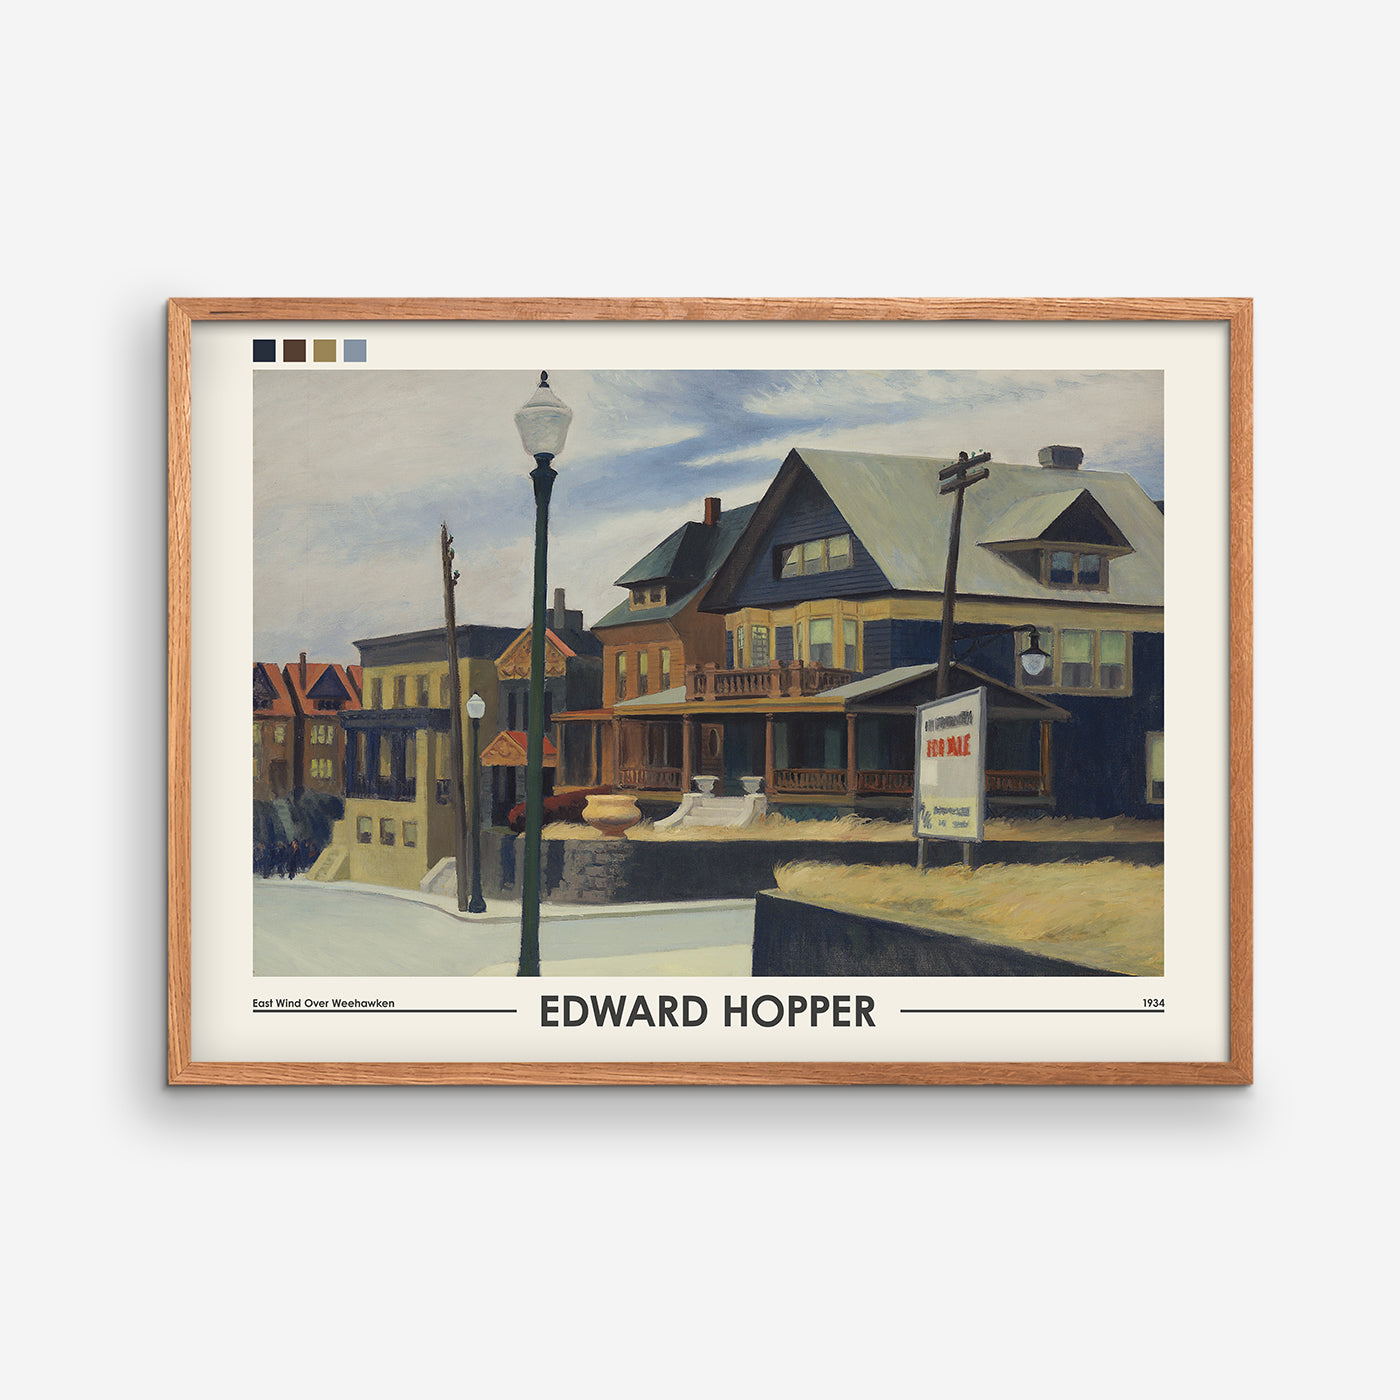 East Wind Over Weehawken - Edward Hopper